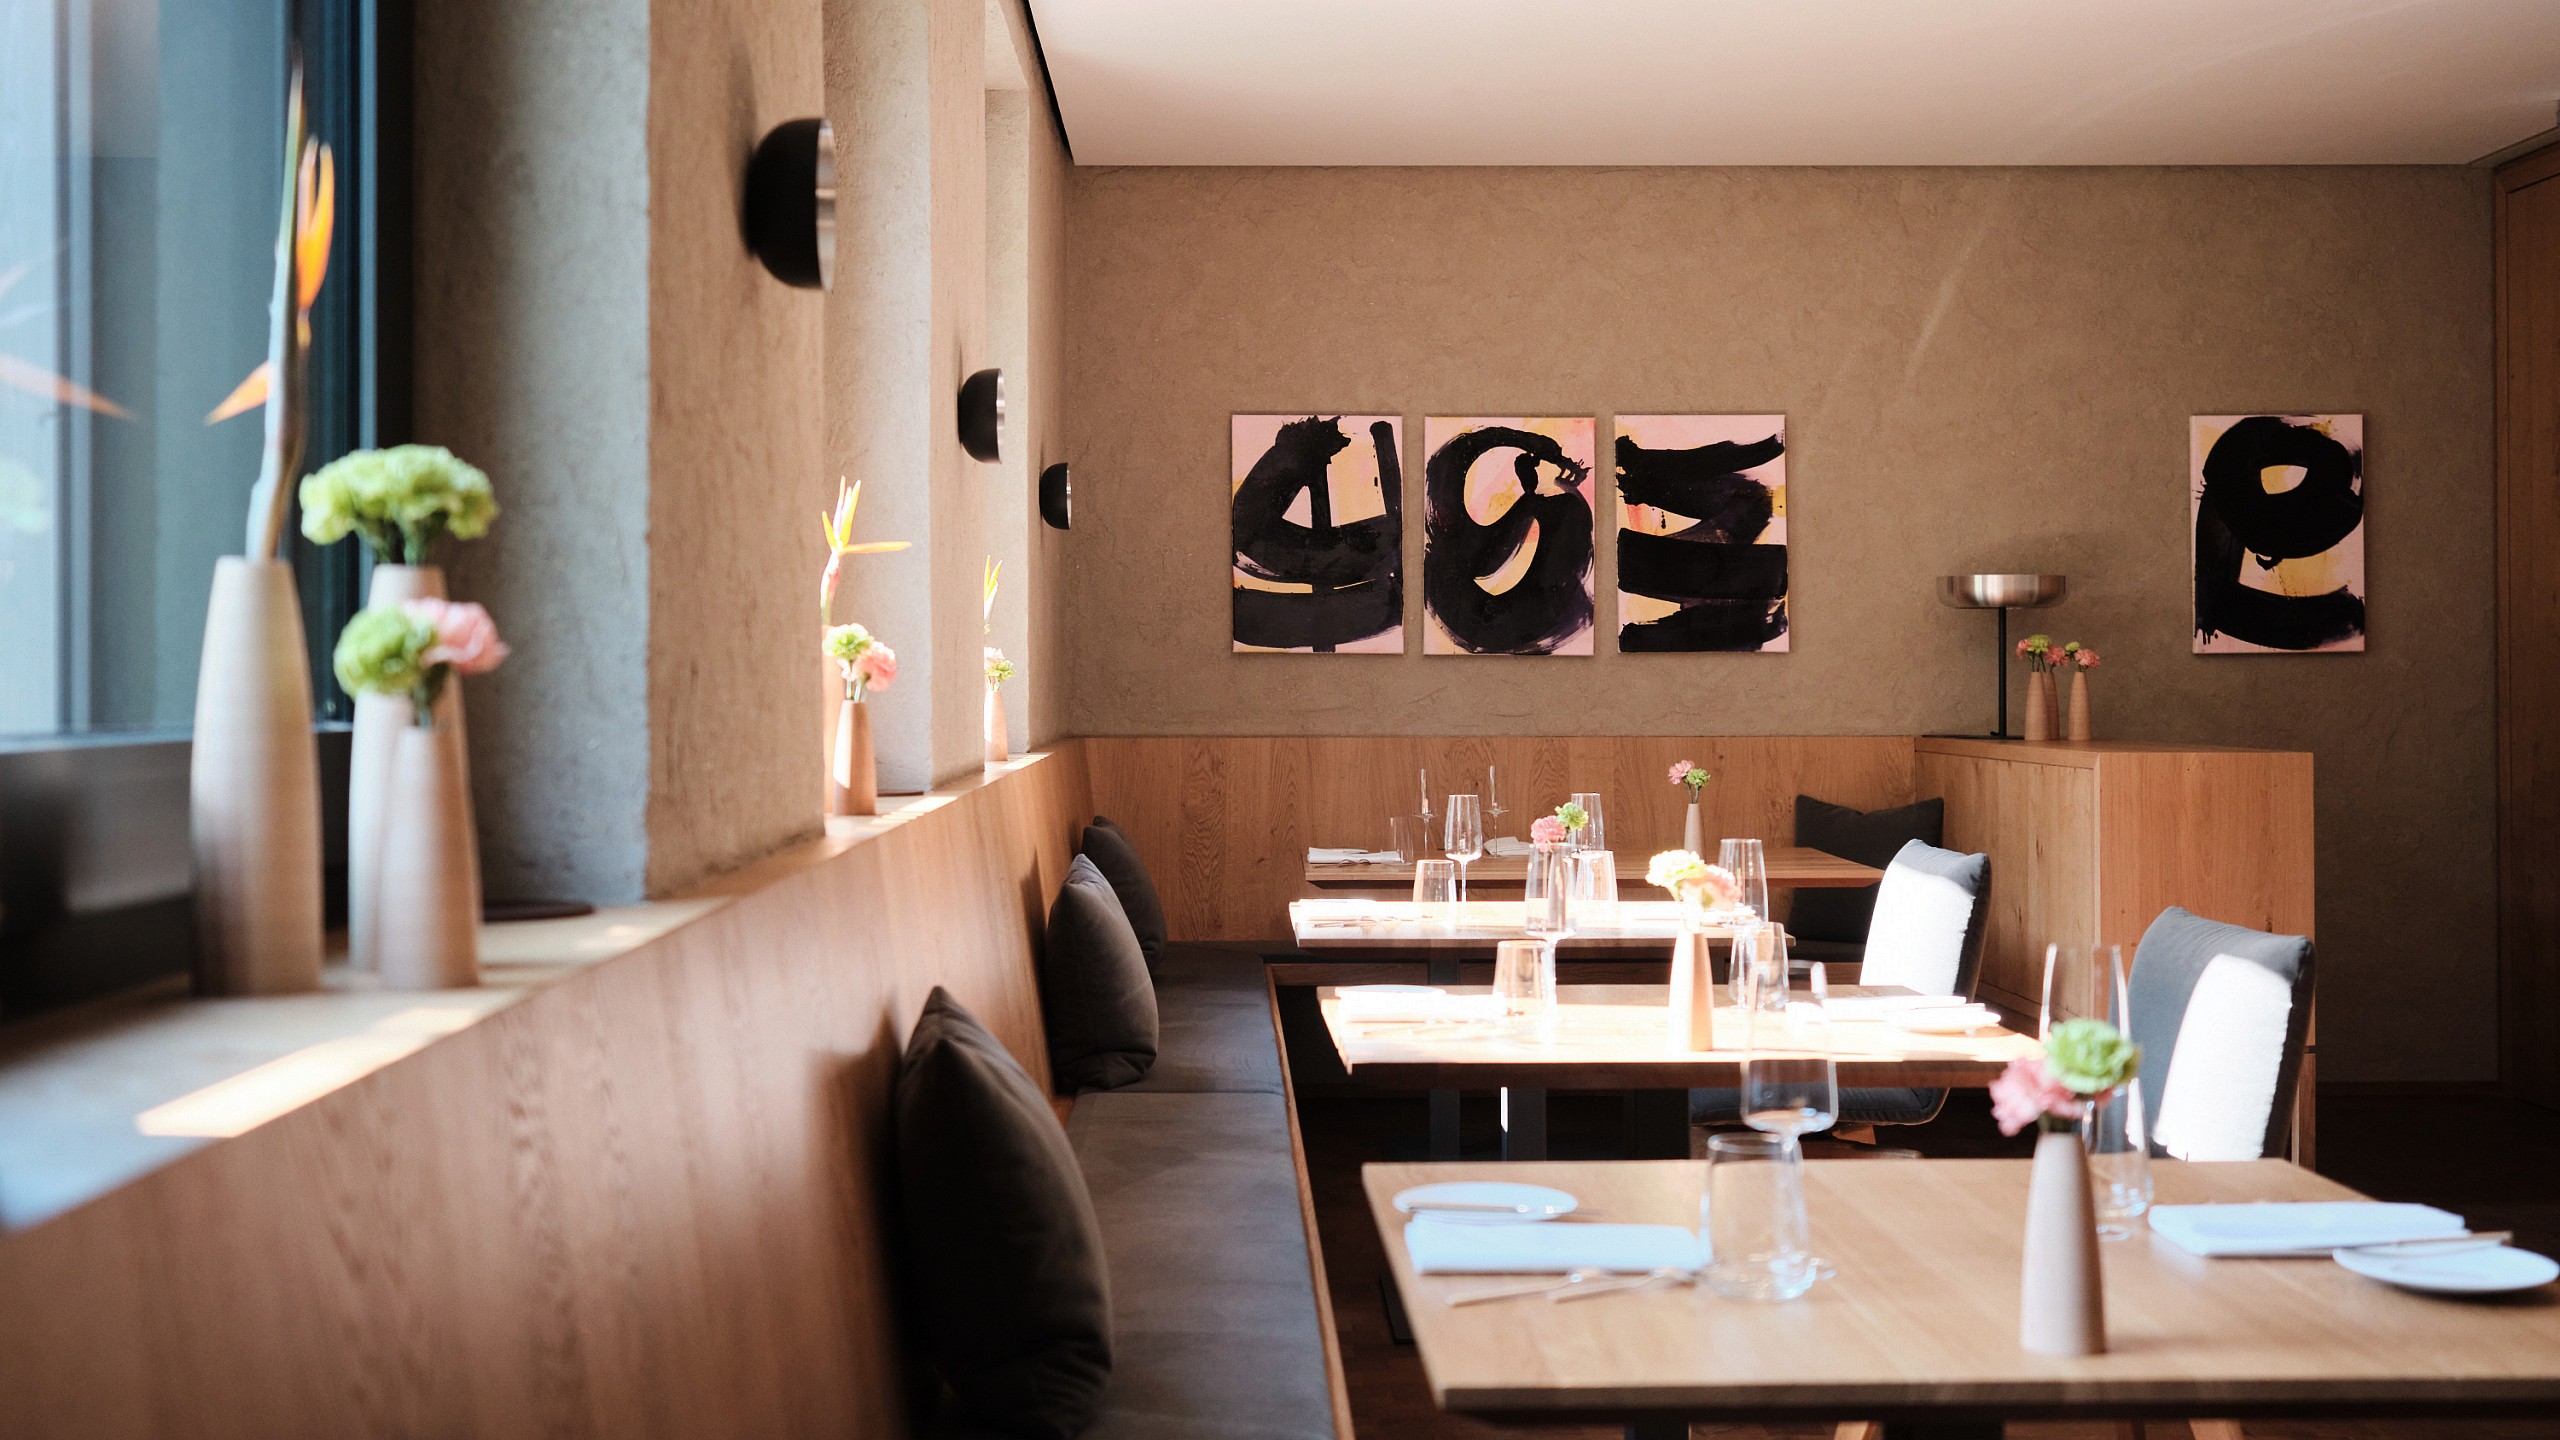 Stilvolles Sterne Restaurant im Schwarzwald mit hölzerner Eckbank und abstrakten Wandbildern.